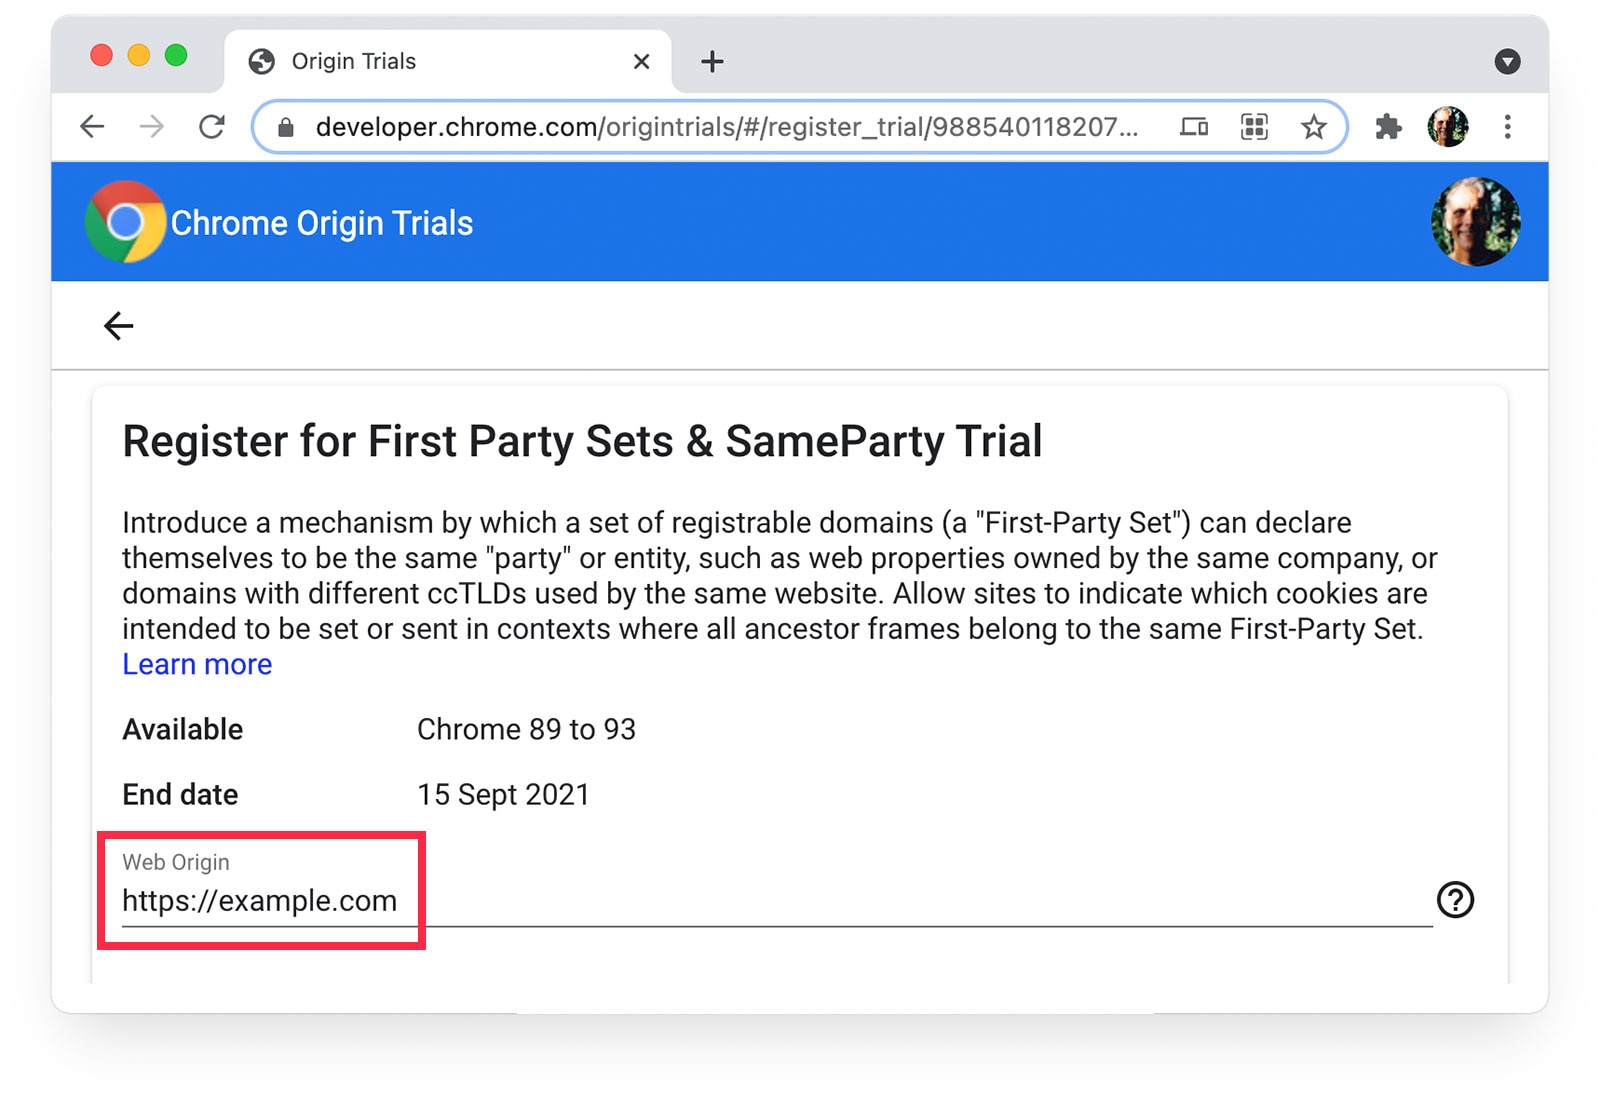 Trang Bản dùng thử theo nguyên gốc của Chrome 
cho thấy https://example.com được chọn làm Nguồn gốc của web.